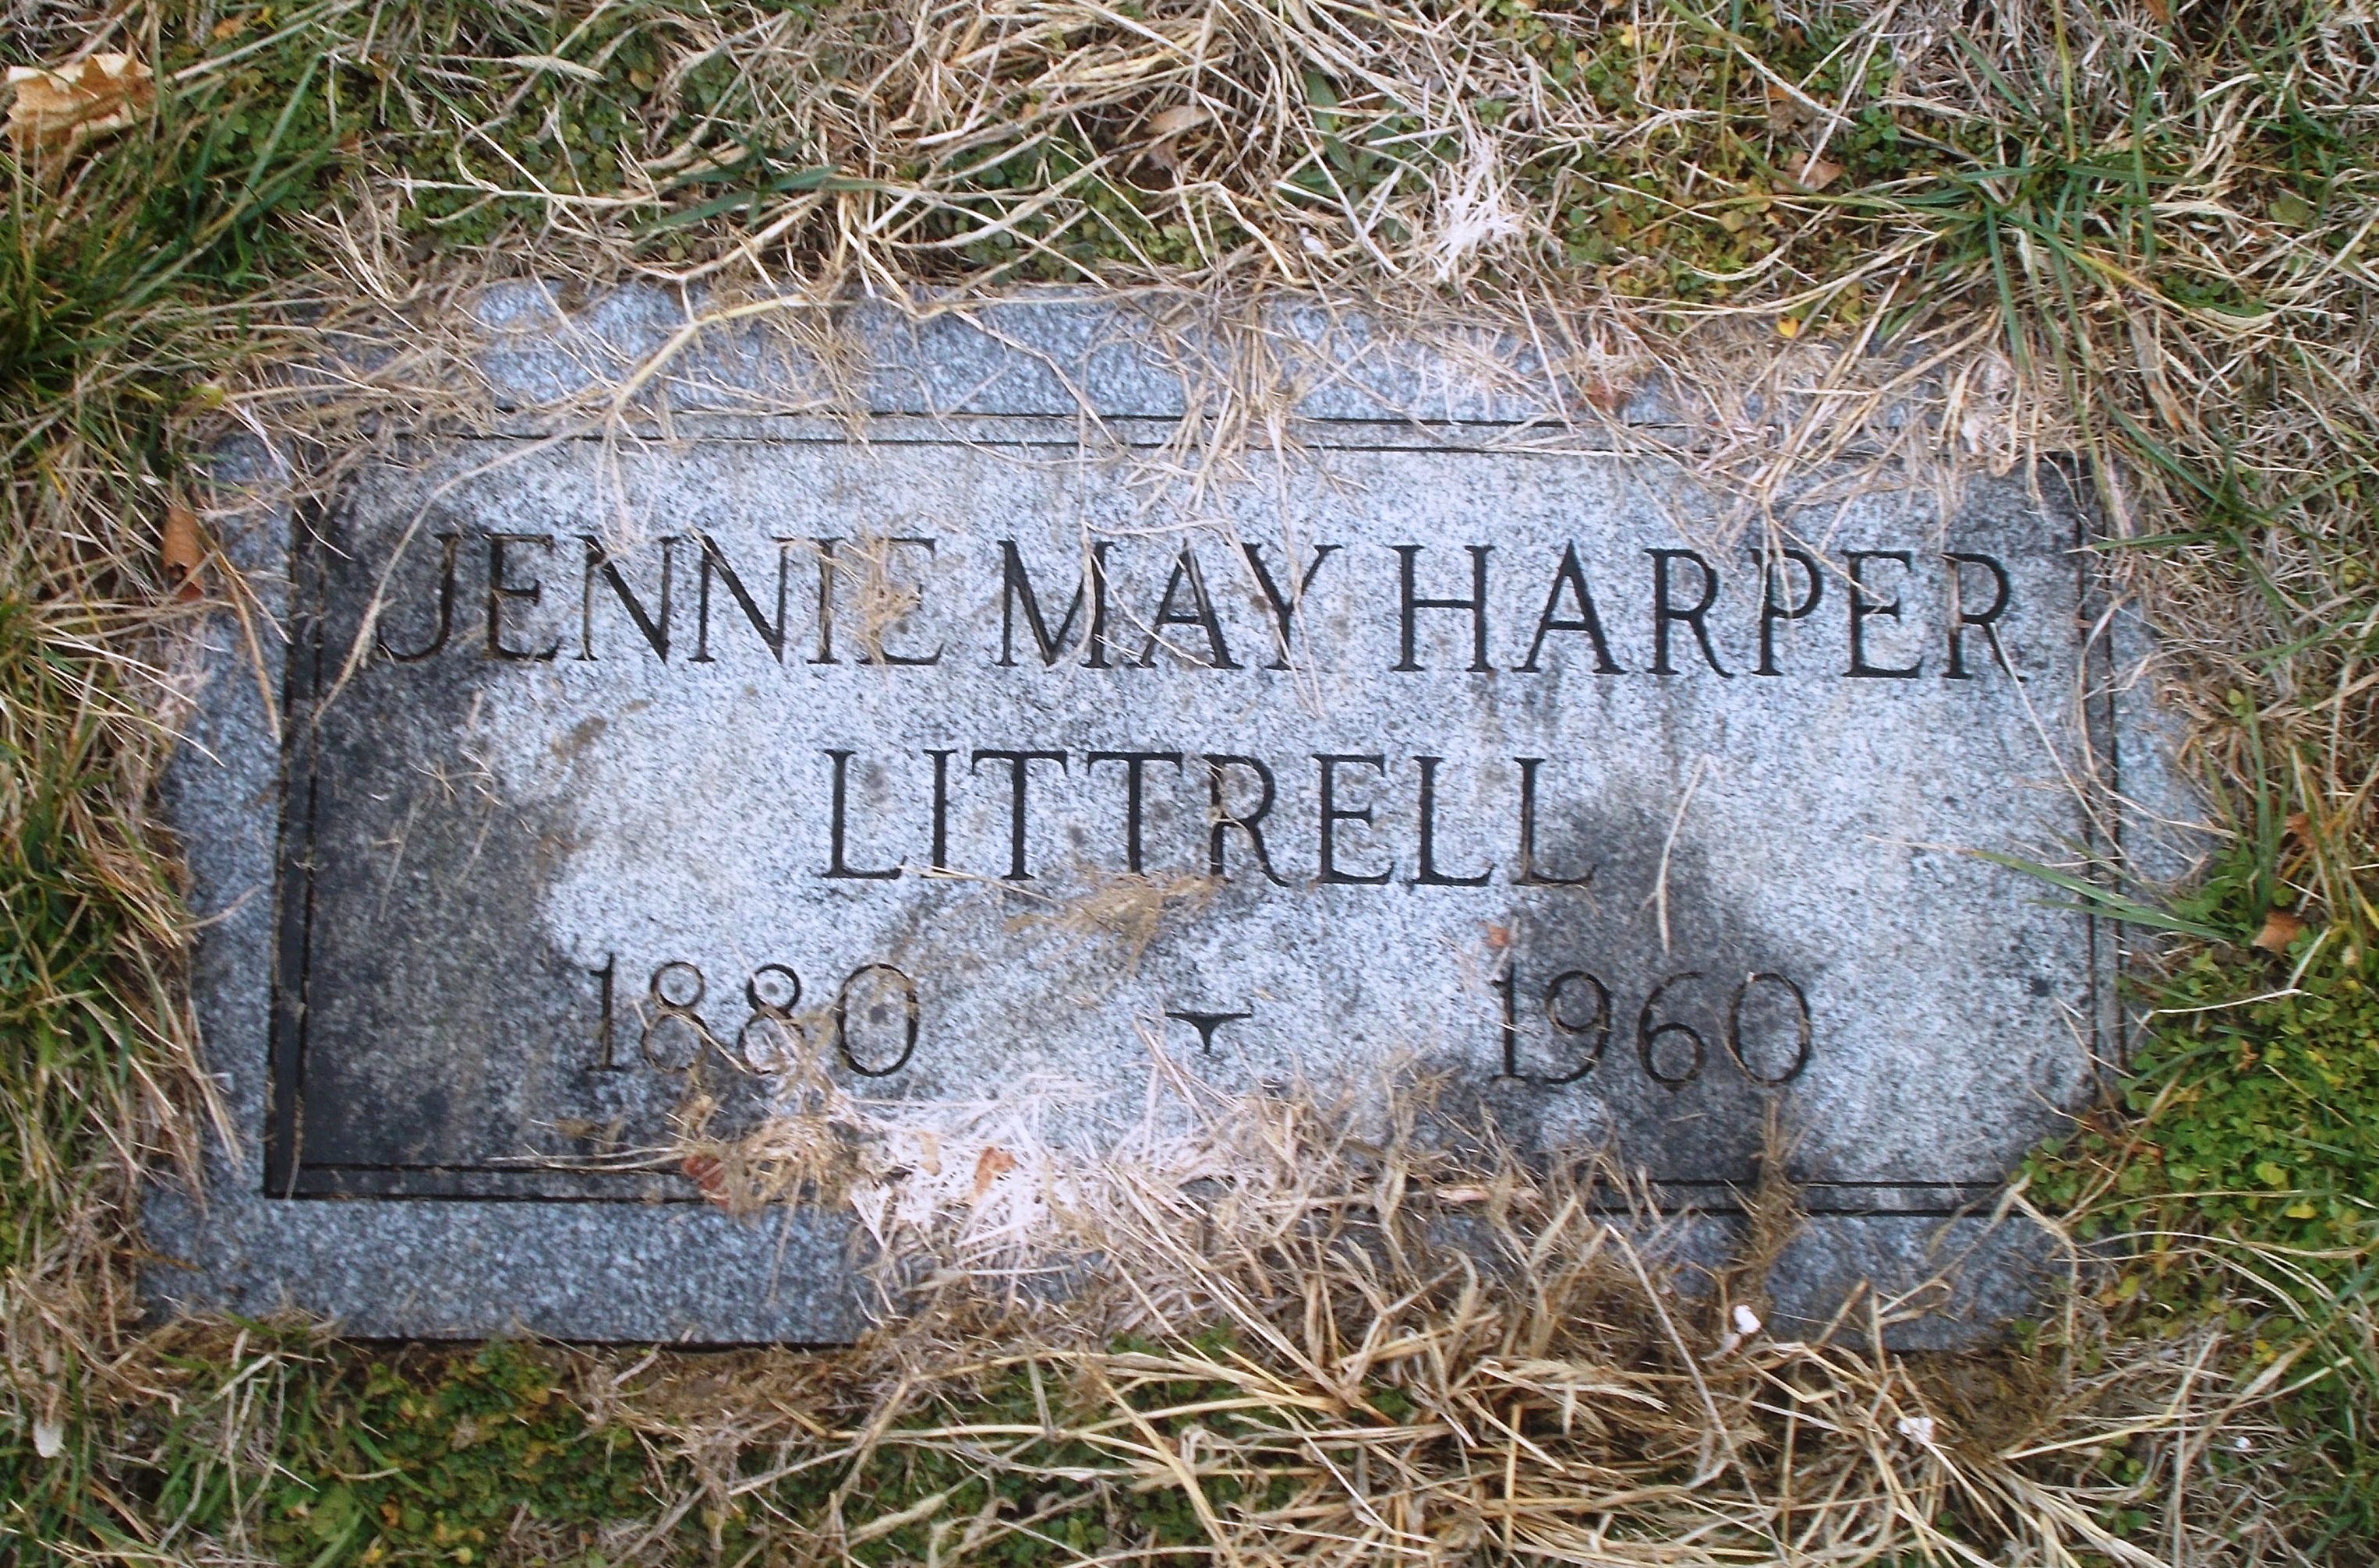 Jennie May Harper Littrell